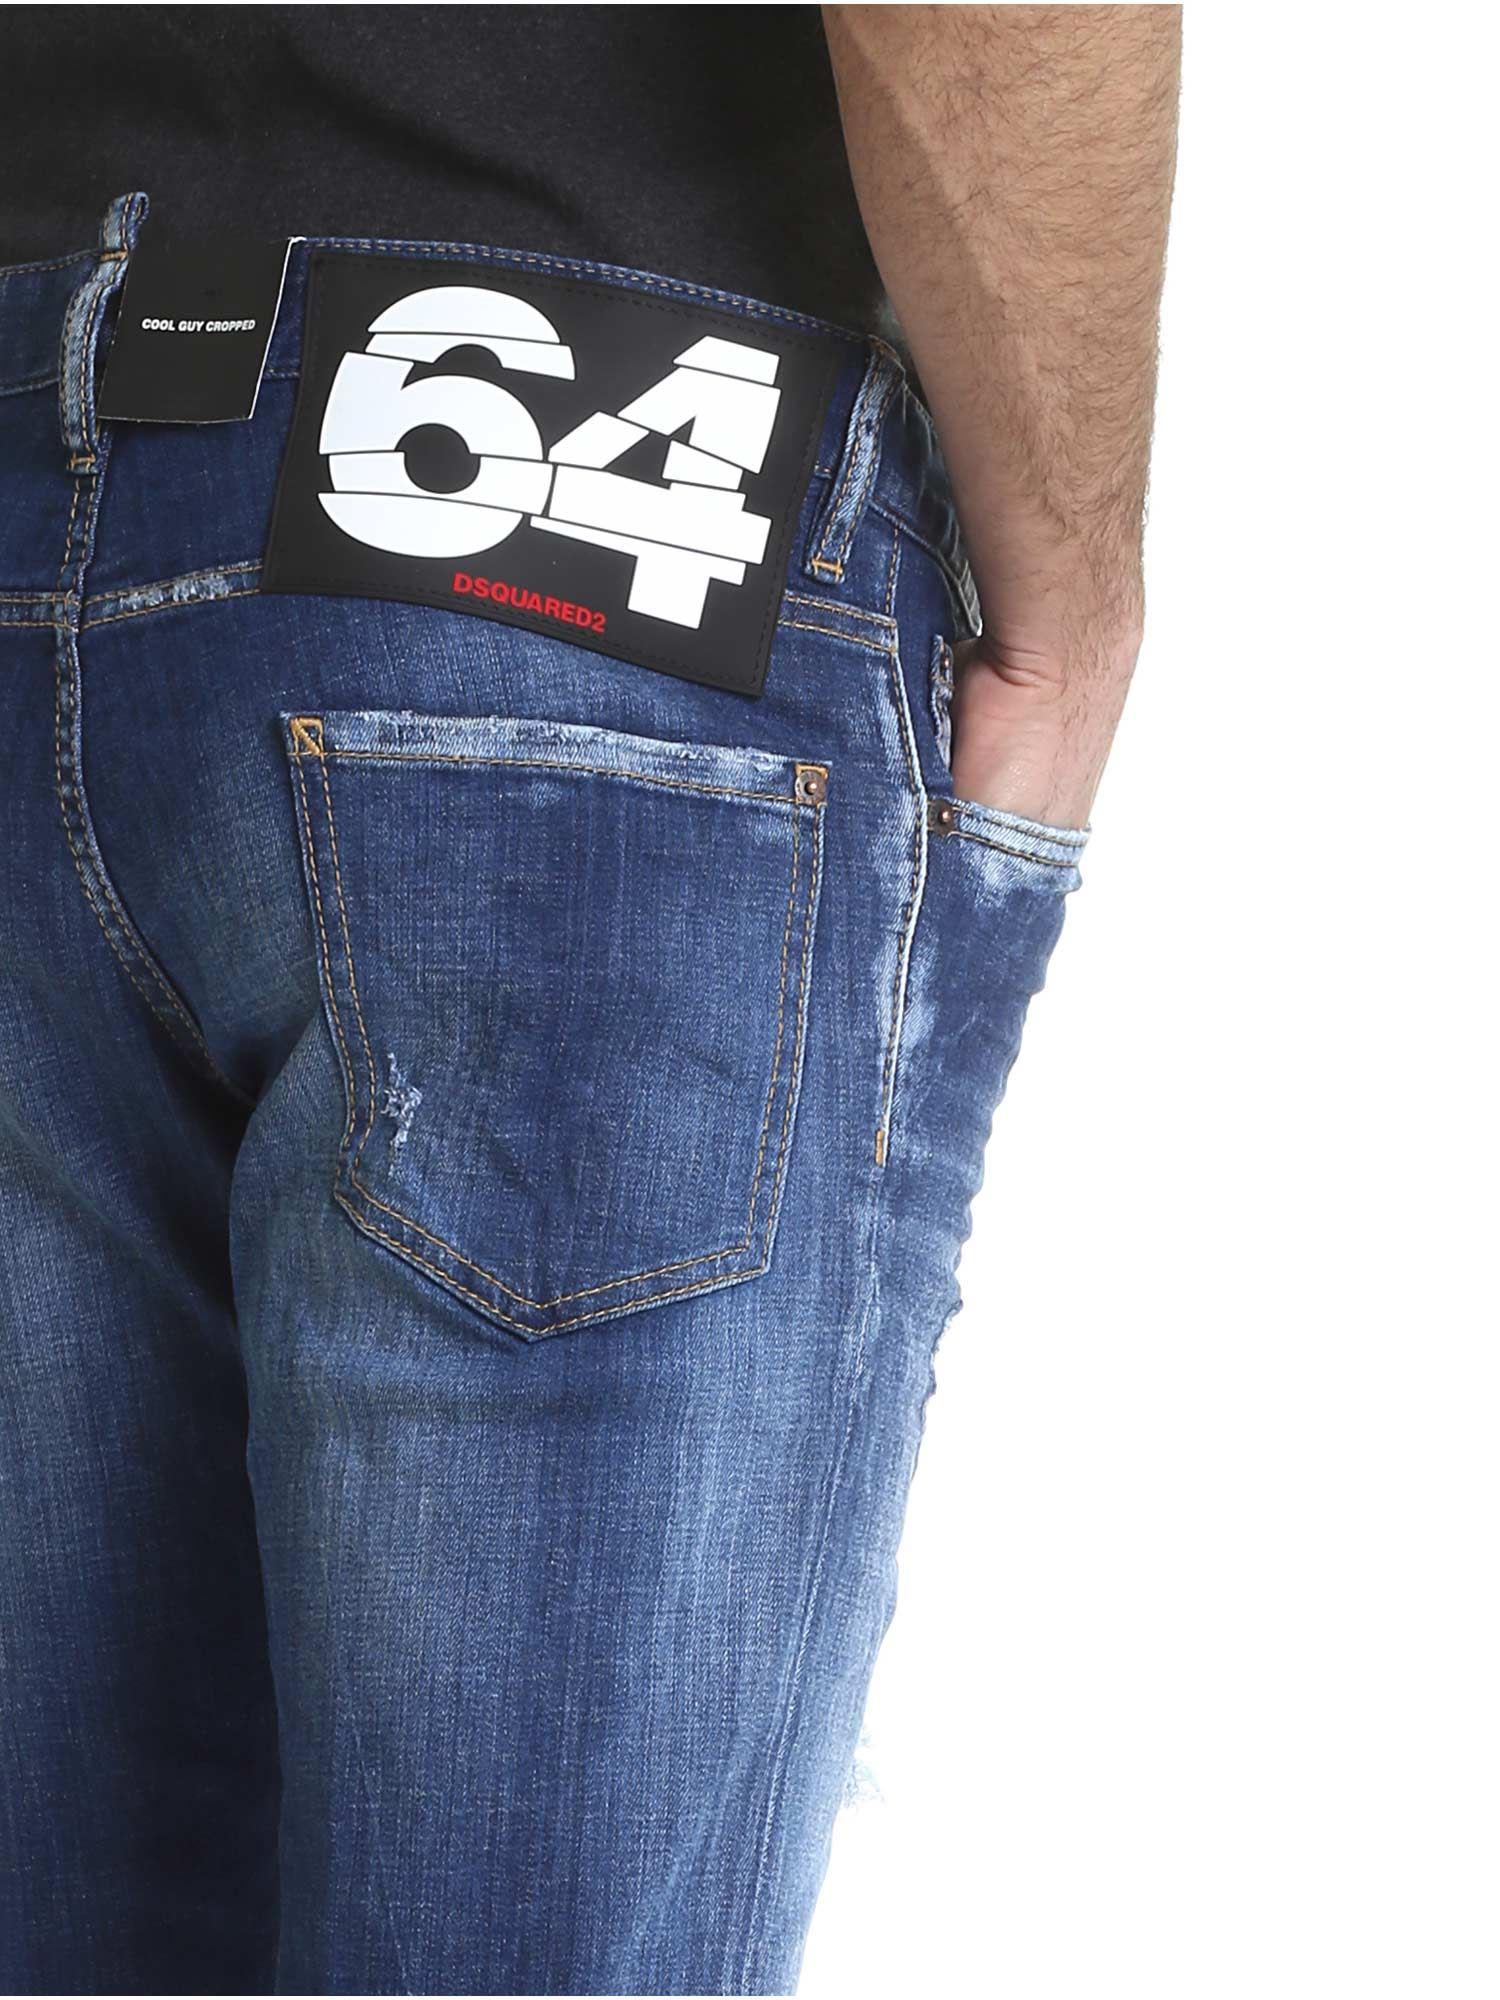 حوض الاستحمام غير راض على وجه التحديد dsquared jeans 64 -  tamarasubdivision.com